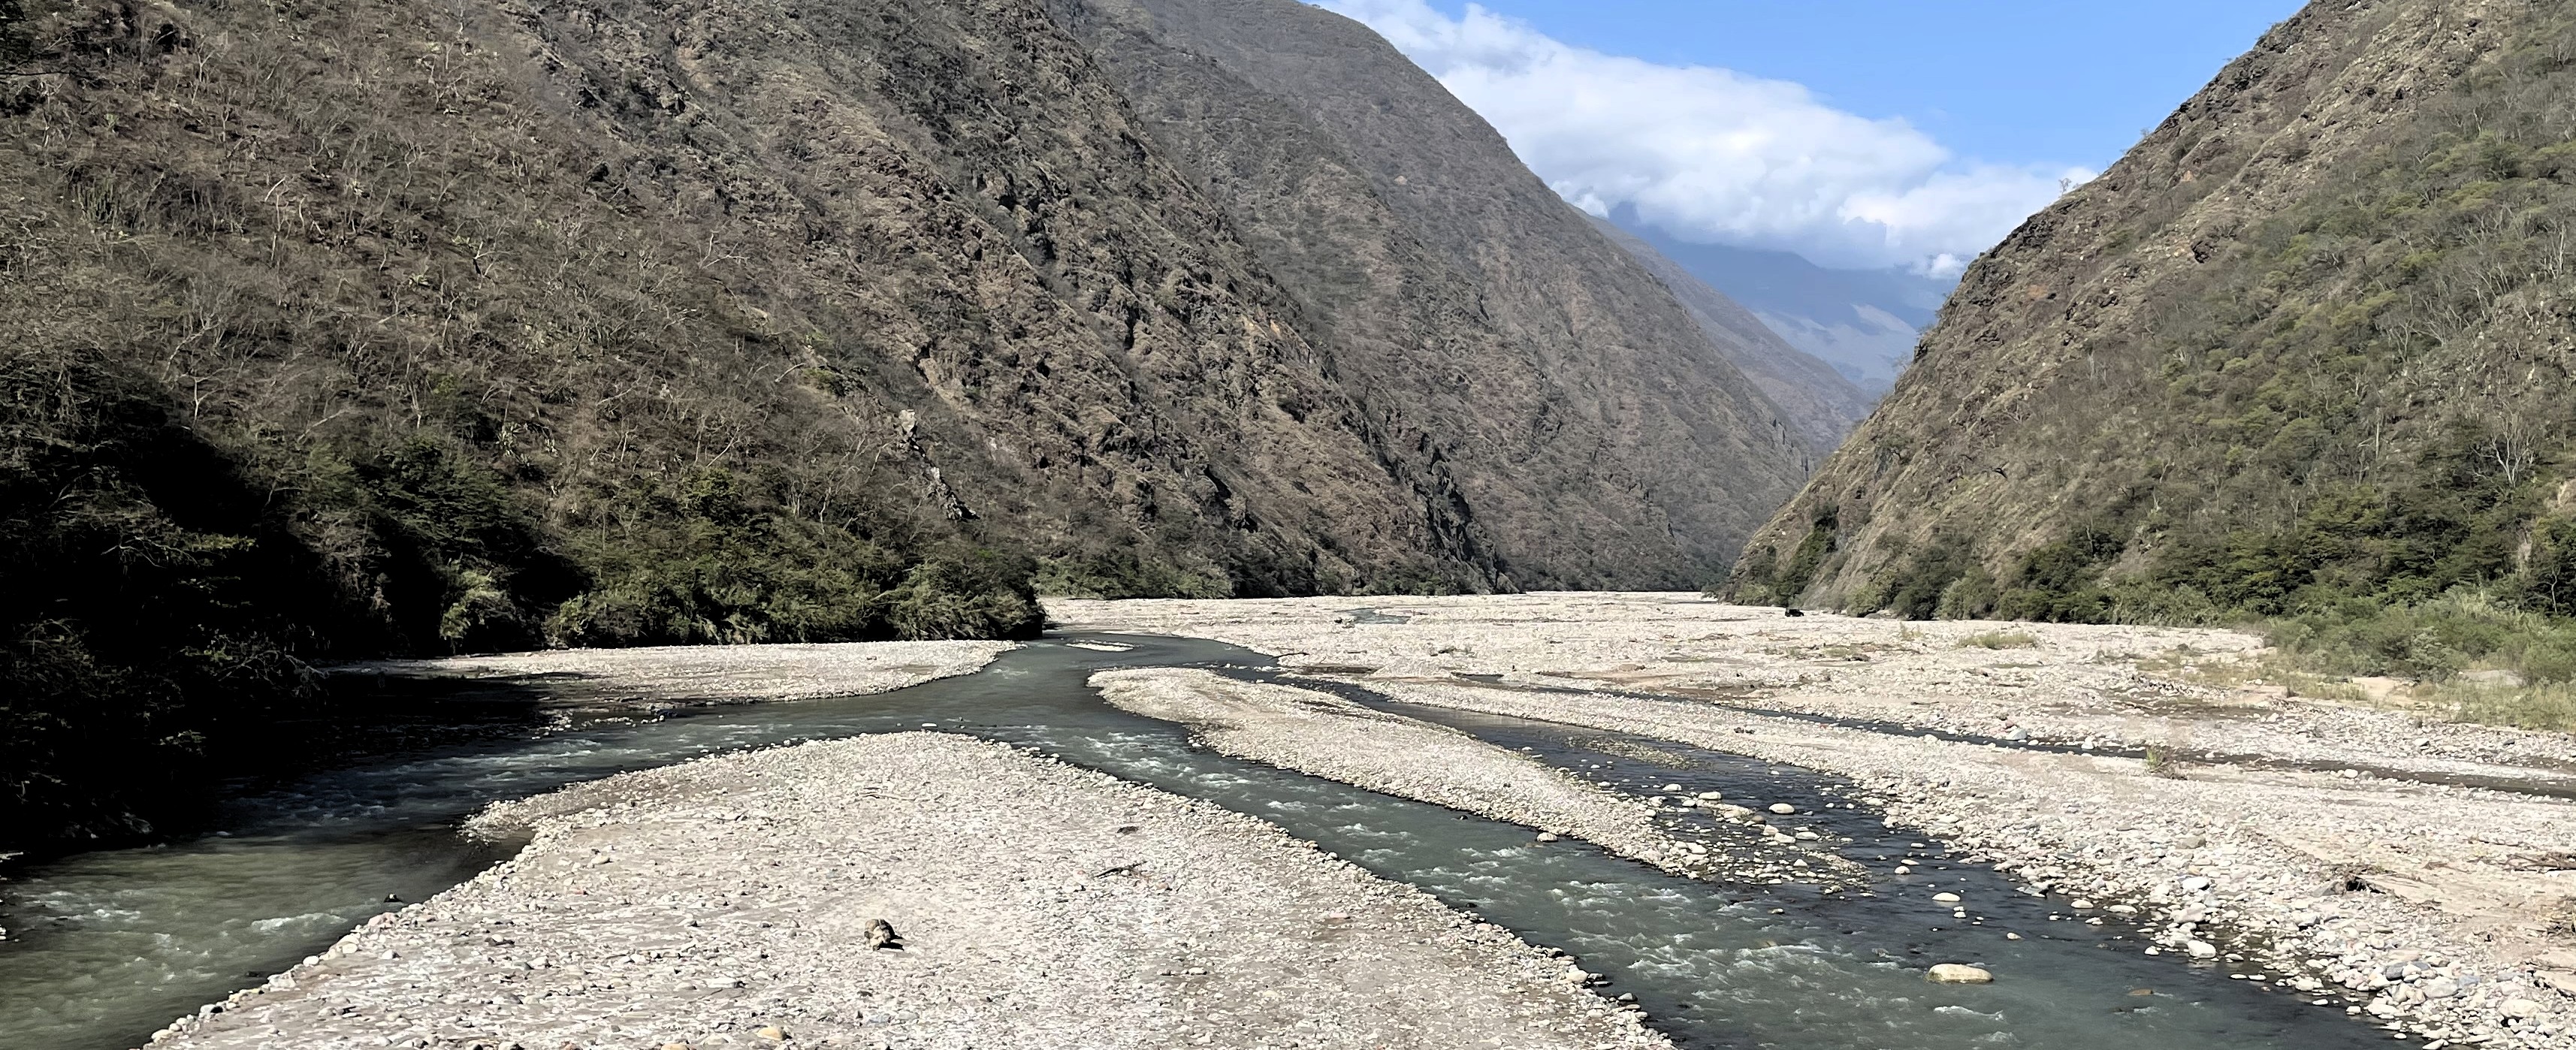 Ruta Irupana - Quime con el Grupo Paseanderos, paisaje del río La Paz.